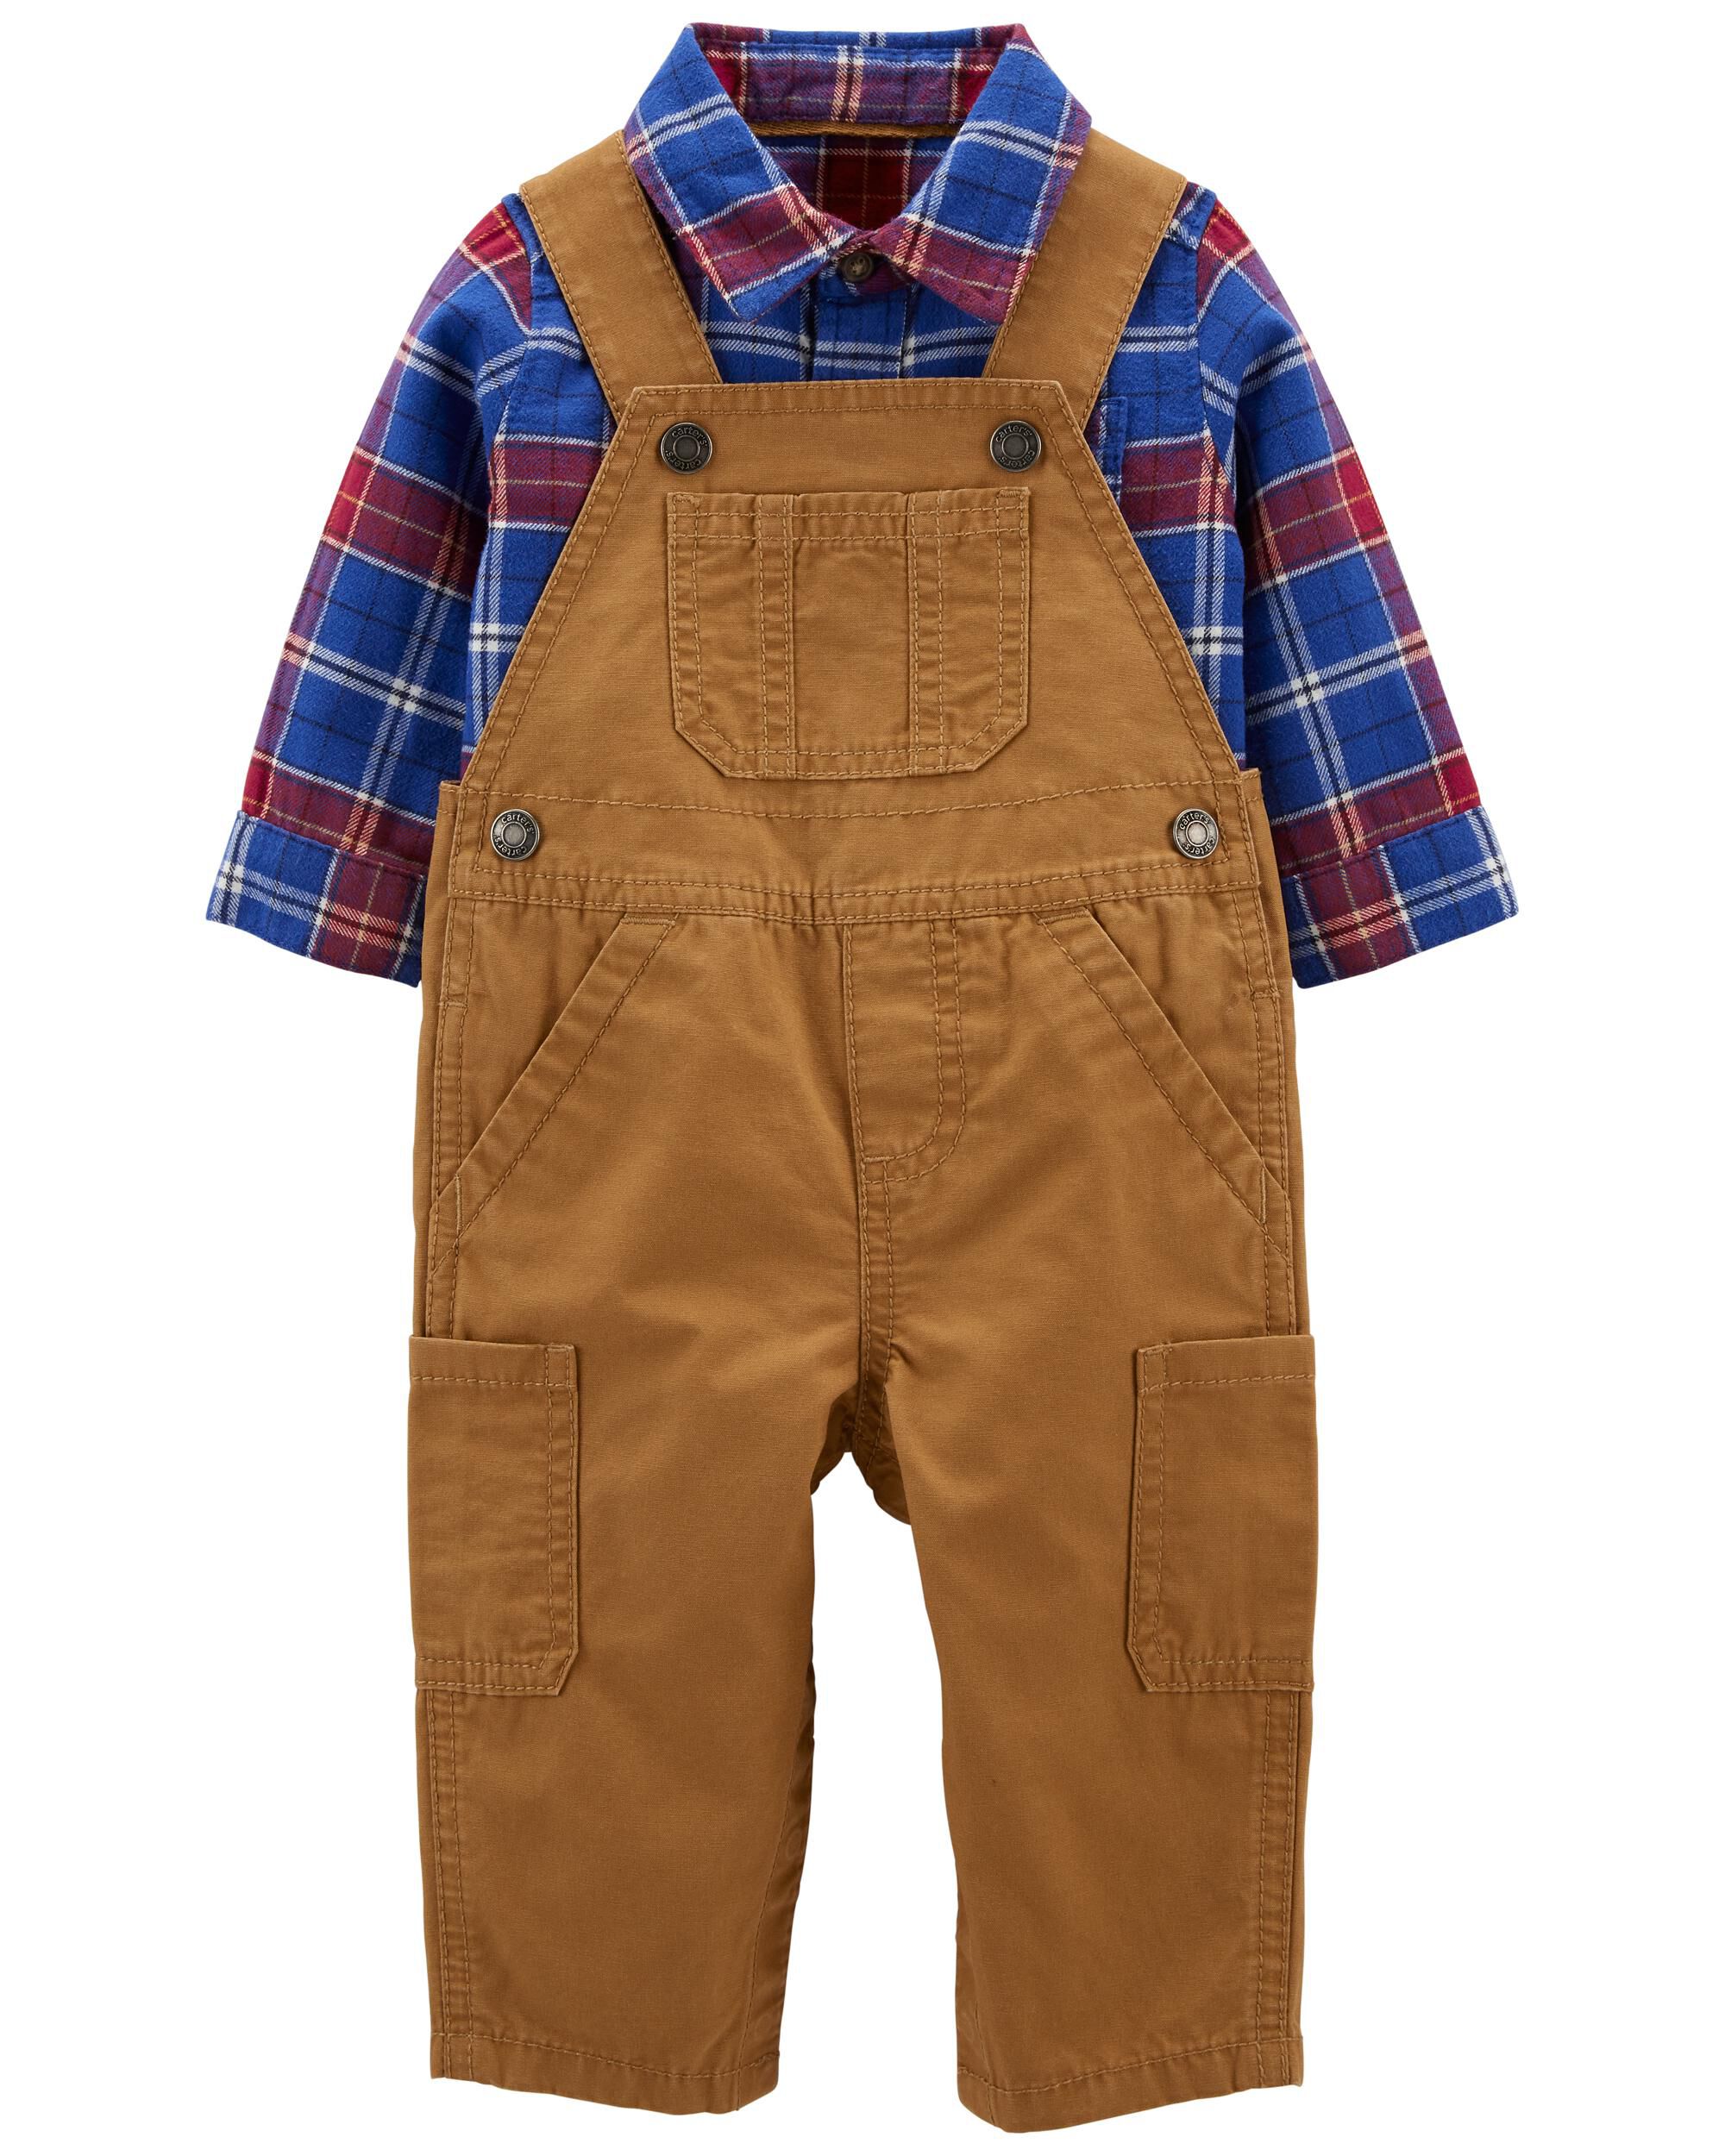 Carter's NWT 12M Infant Boy Plaid Top 2Pc Shirt Pant Set 